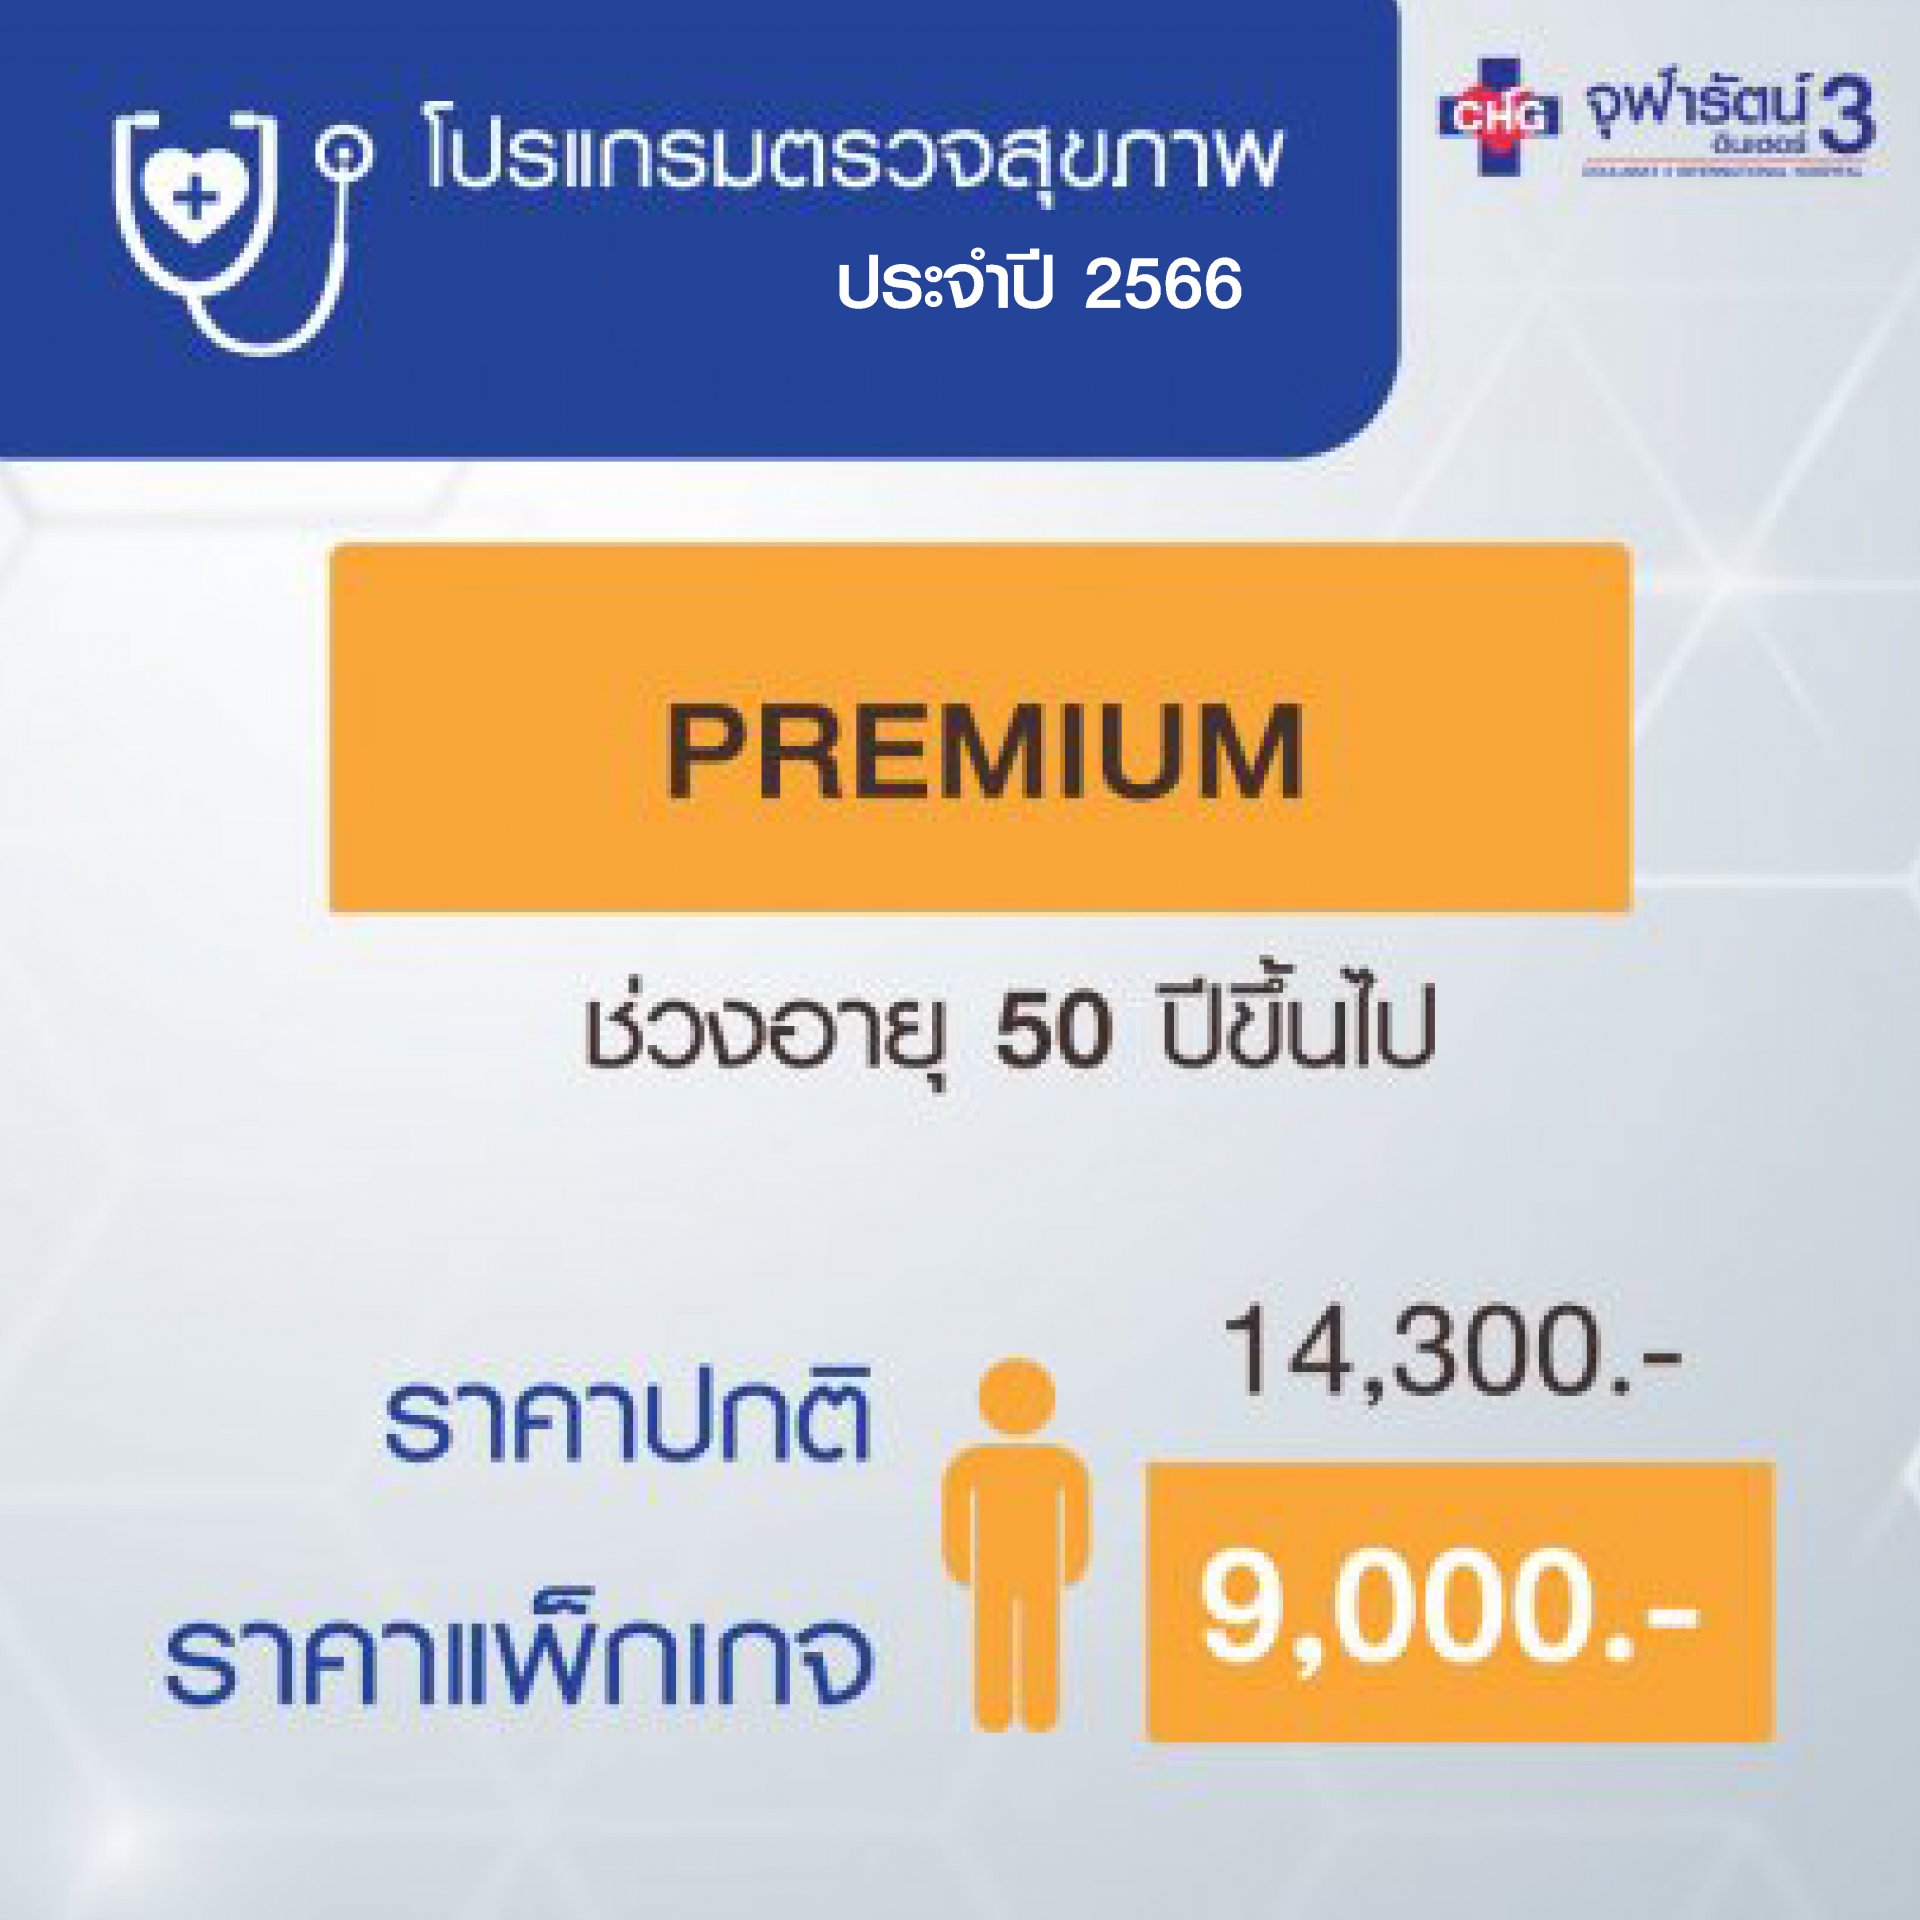 โปรแกรมตรวจสุขภาพพื้นฐาน (Premium)